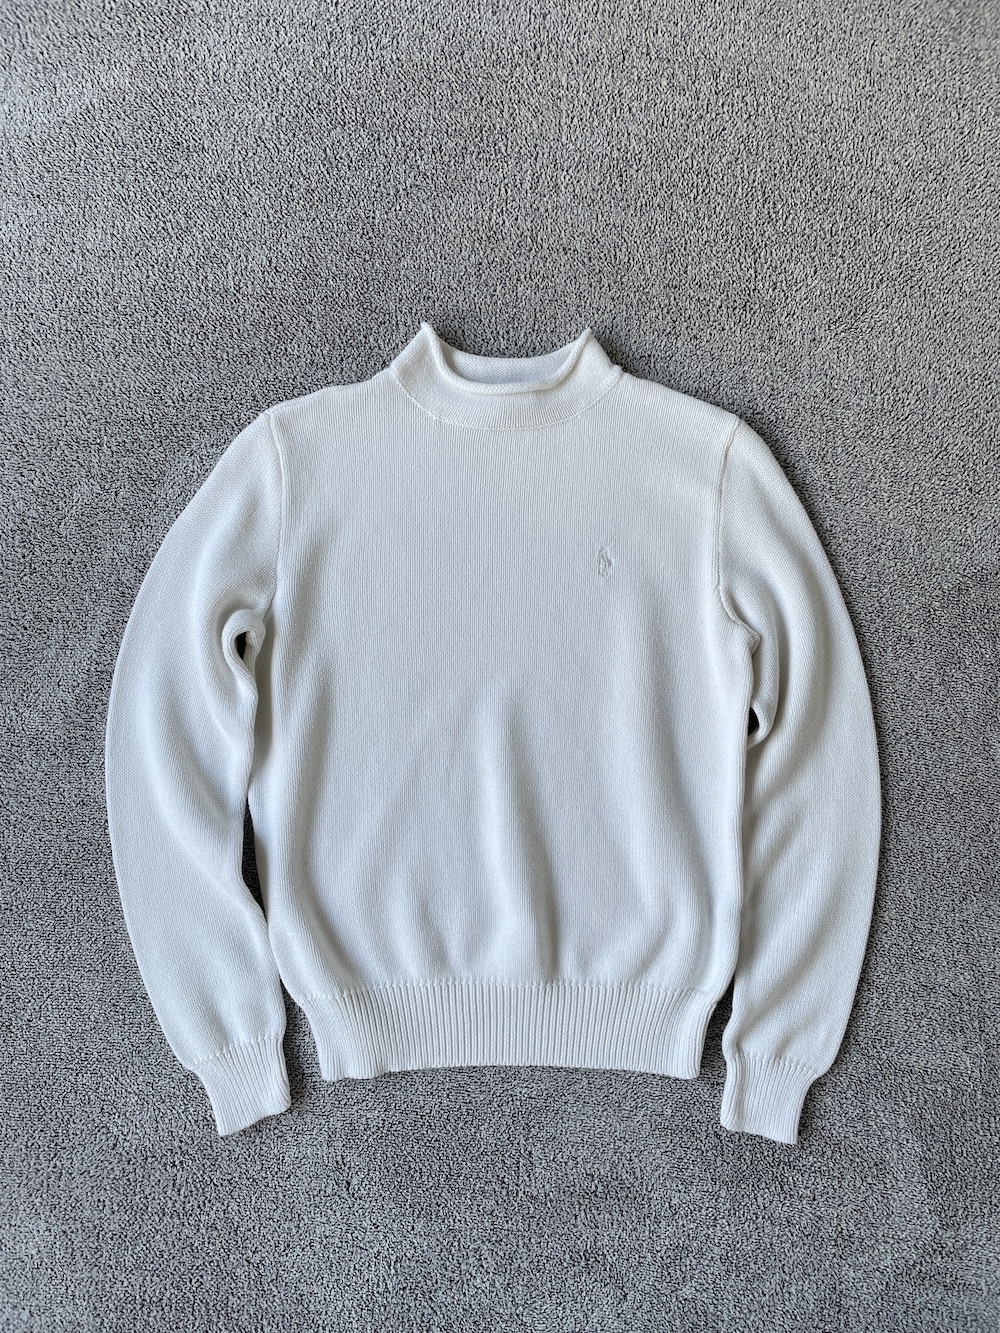 [ women L ] Polo Ralph Lauren Sweater (6425)